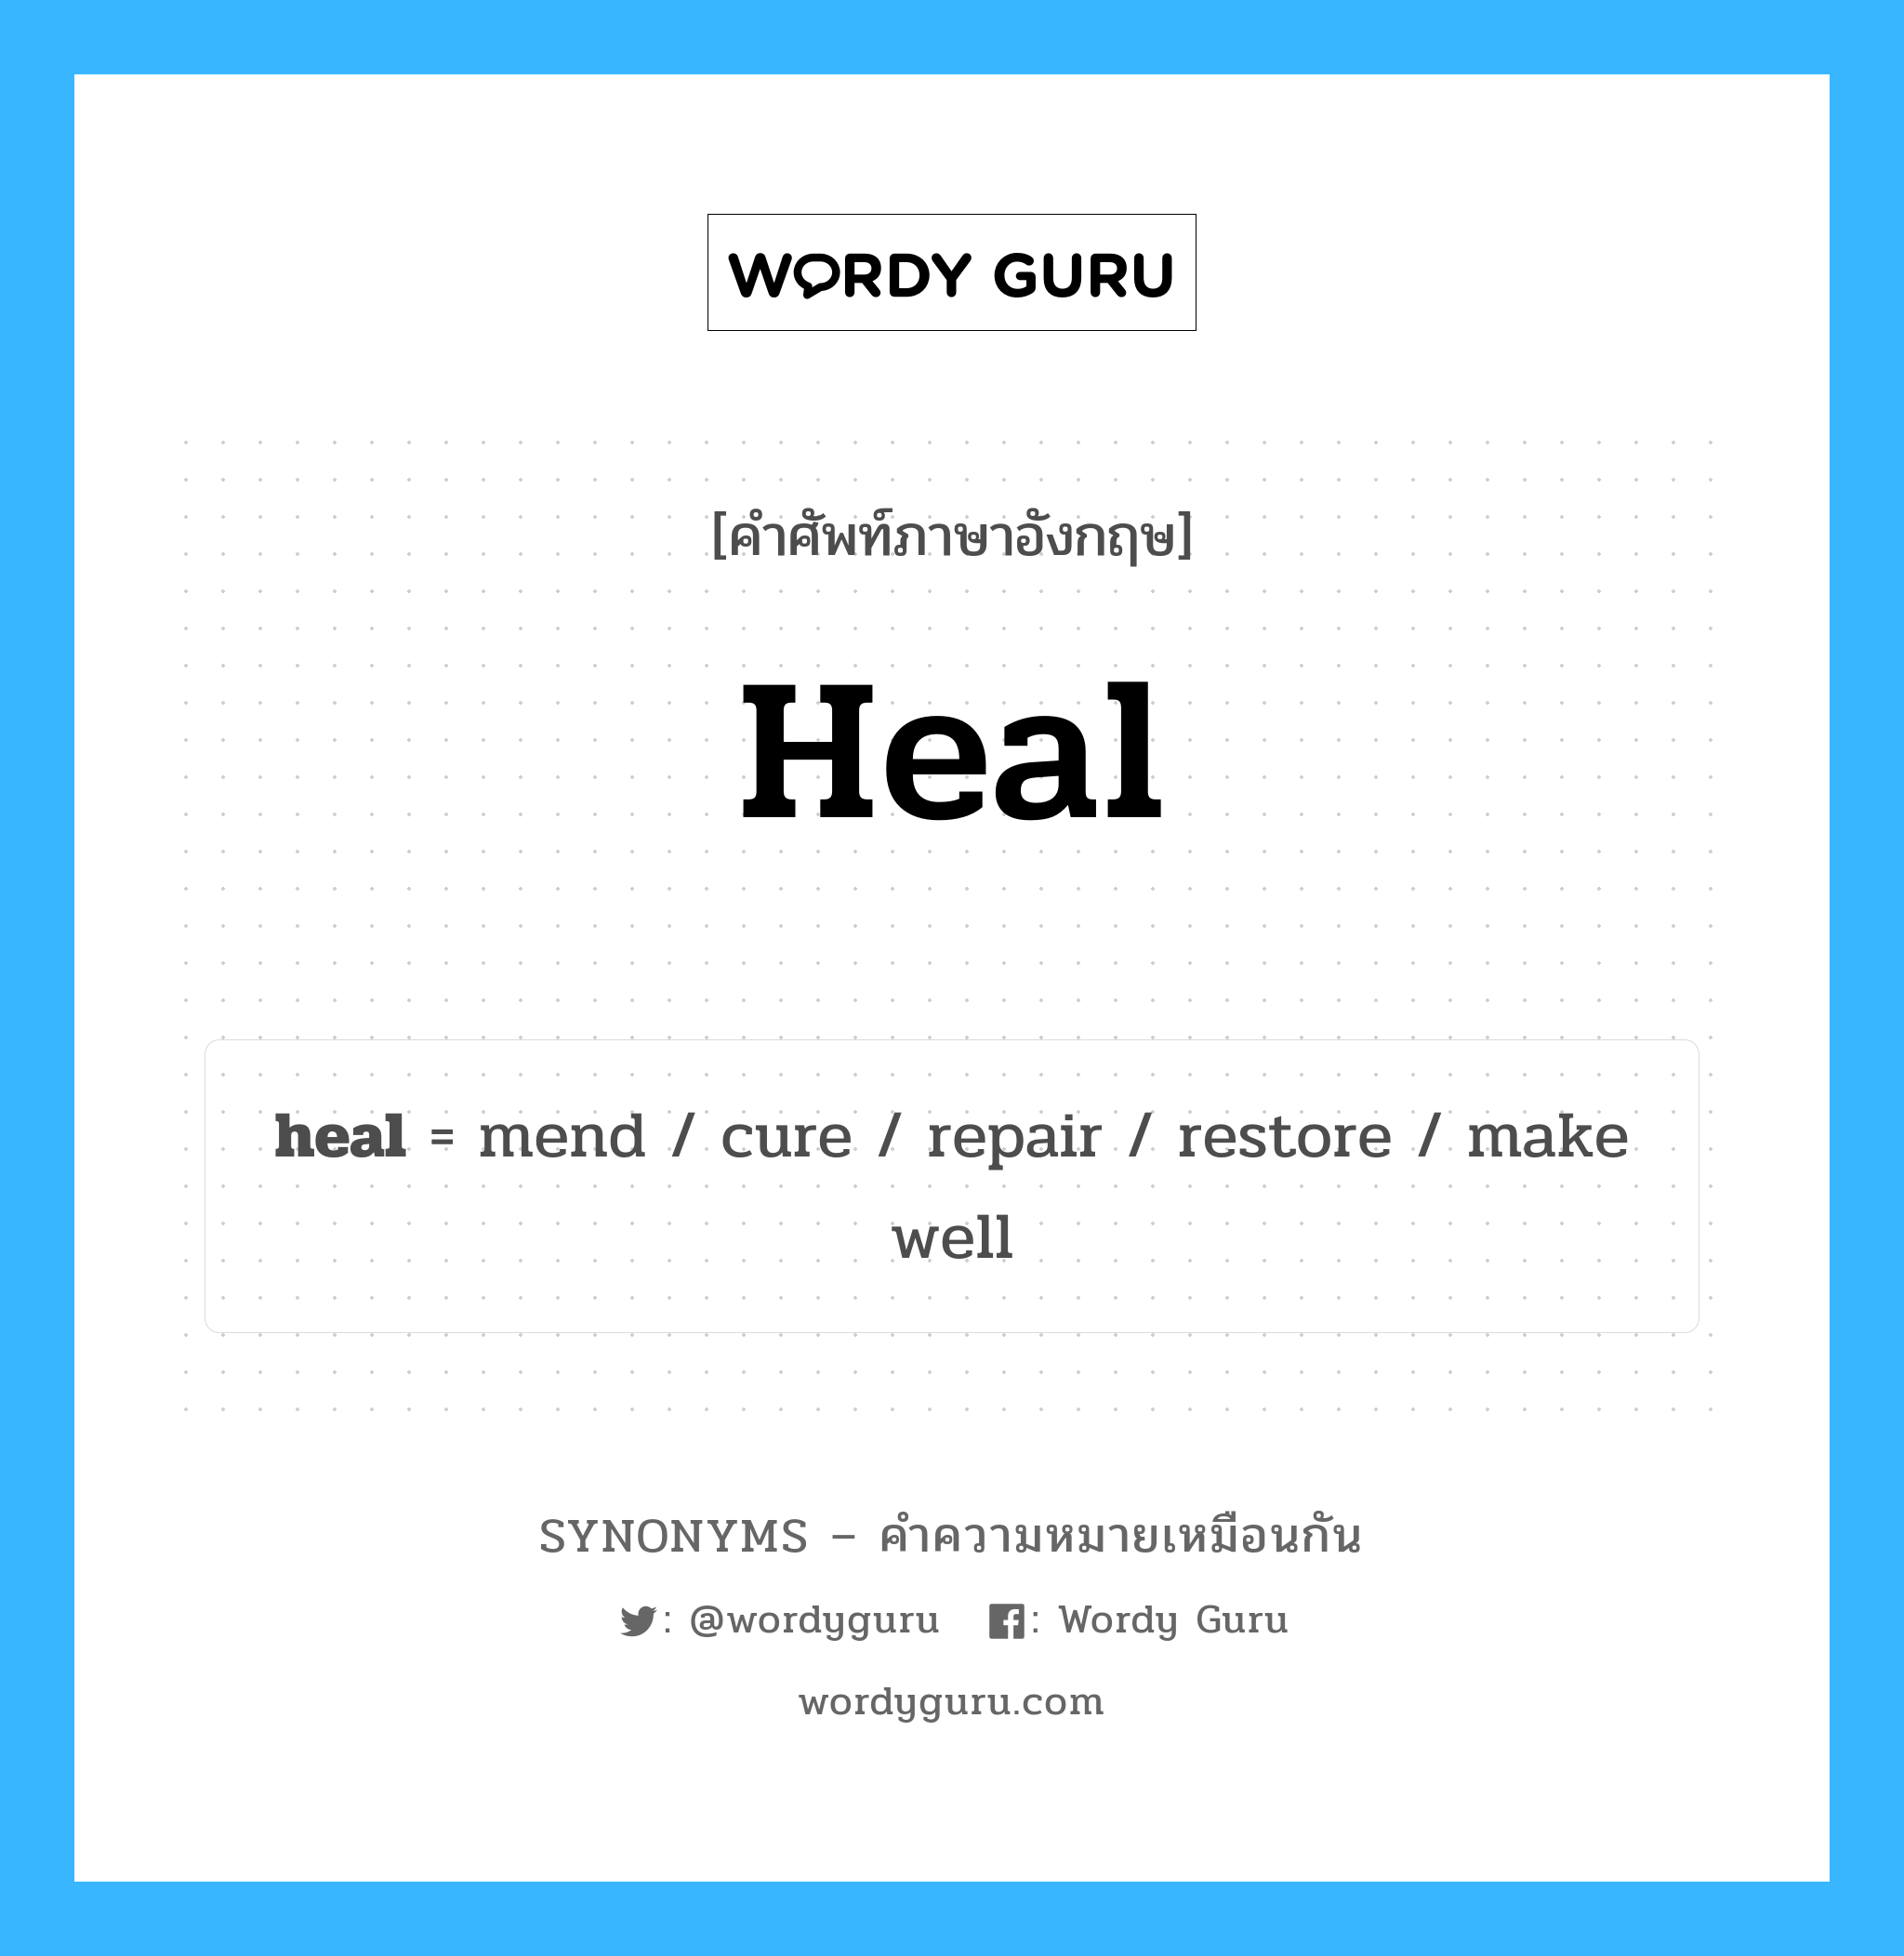 heal เป็นหนึ่งใน repair และมีคำอื่น ๆ อีกดังนี้, คำศัพท์ภาษาอังกฤษ heal ความหมายคล้ายกันกับ repair แปลว่า ซ่อมแซม หมวด repair